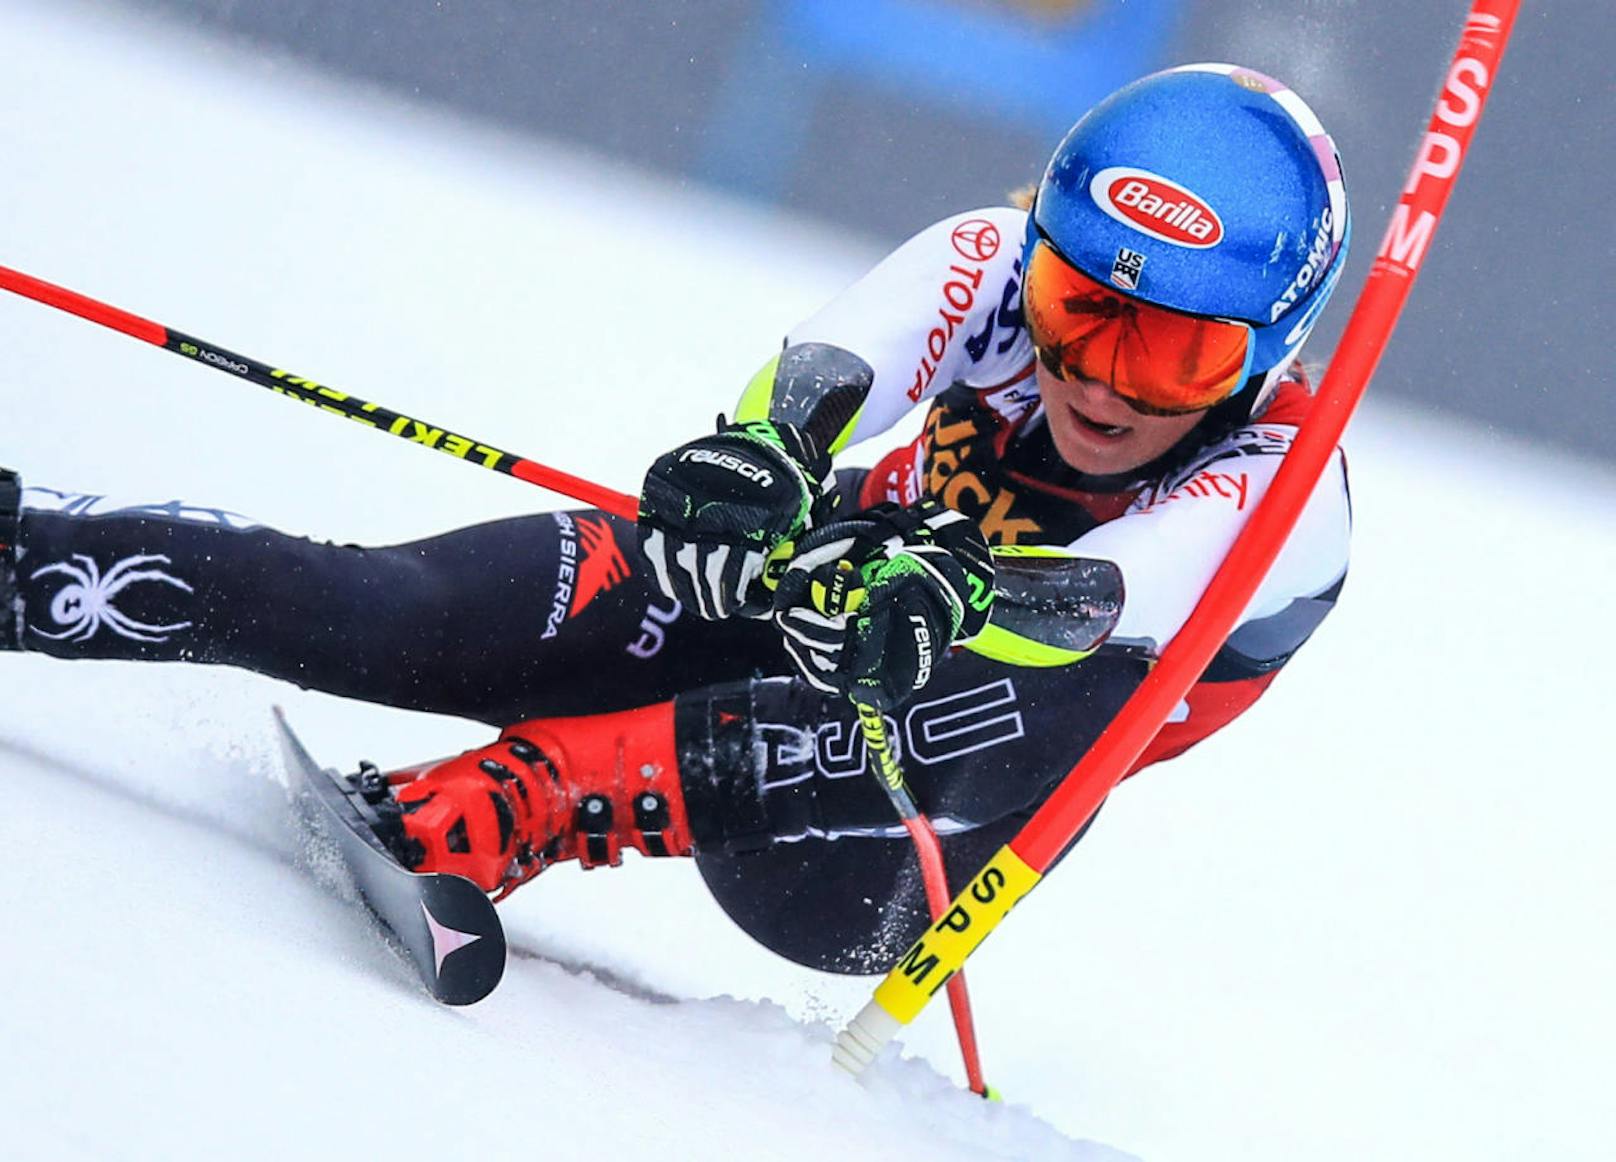 Und auch im Slalom behielt Shiffrin die Oberhand und fuhr ihren 13. (!) Saisonsieg ein.

<b><i>Maribor, Slalom (2.2.2019)</i></b>
1. Mikaela Shiffrin (US)
2. Anna Swenn-Larsson (Swe)
3. Wendy Holdener (Sz)
<b>6. Bernadette Schild</b>